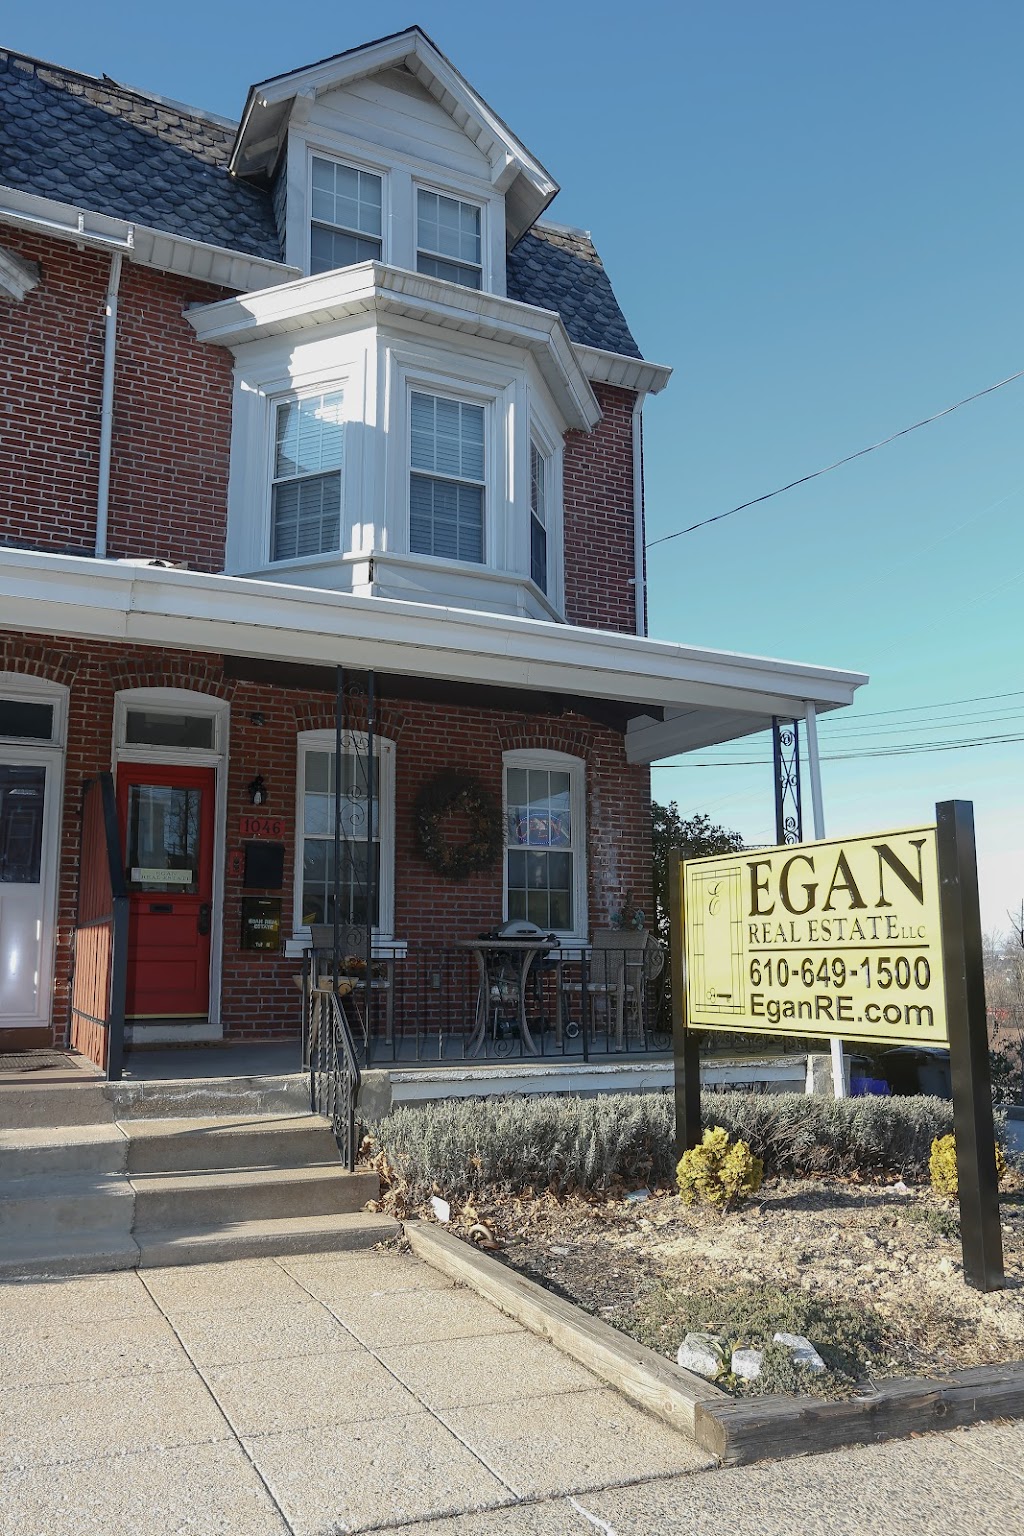 Egan Real Estate | 1046 DeKalb St, Bridgeport, PA 19405 | Phone: (610) 649-1500